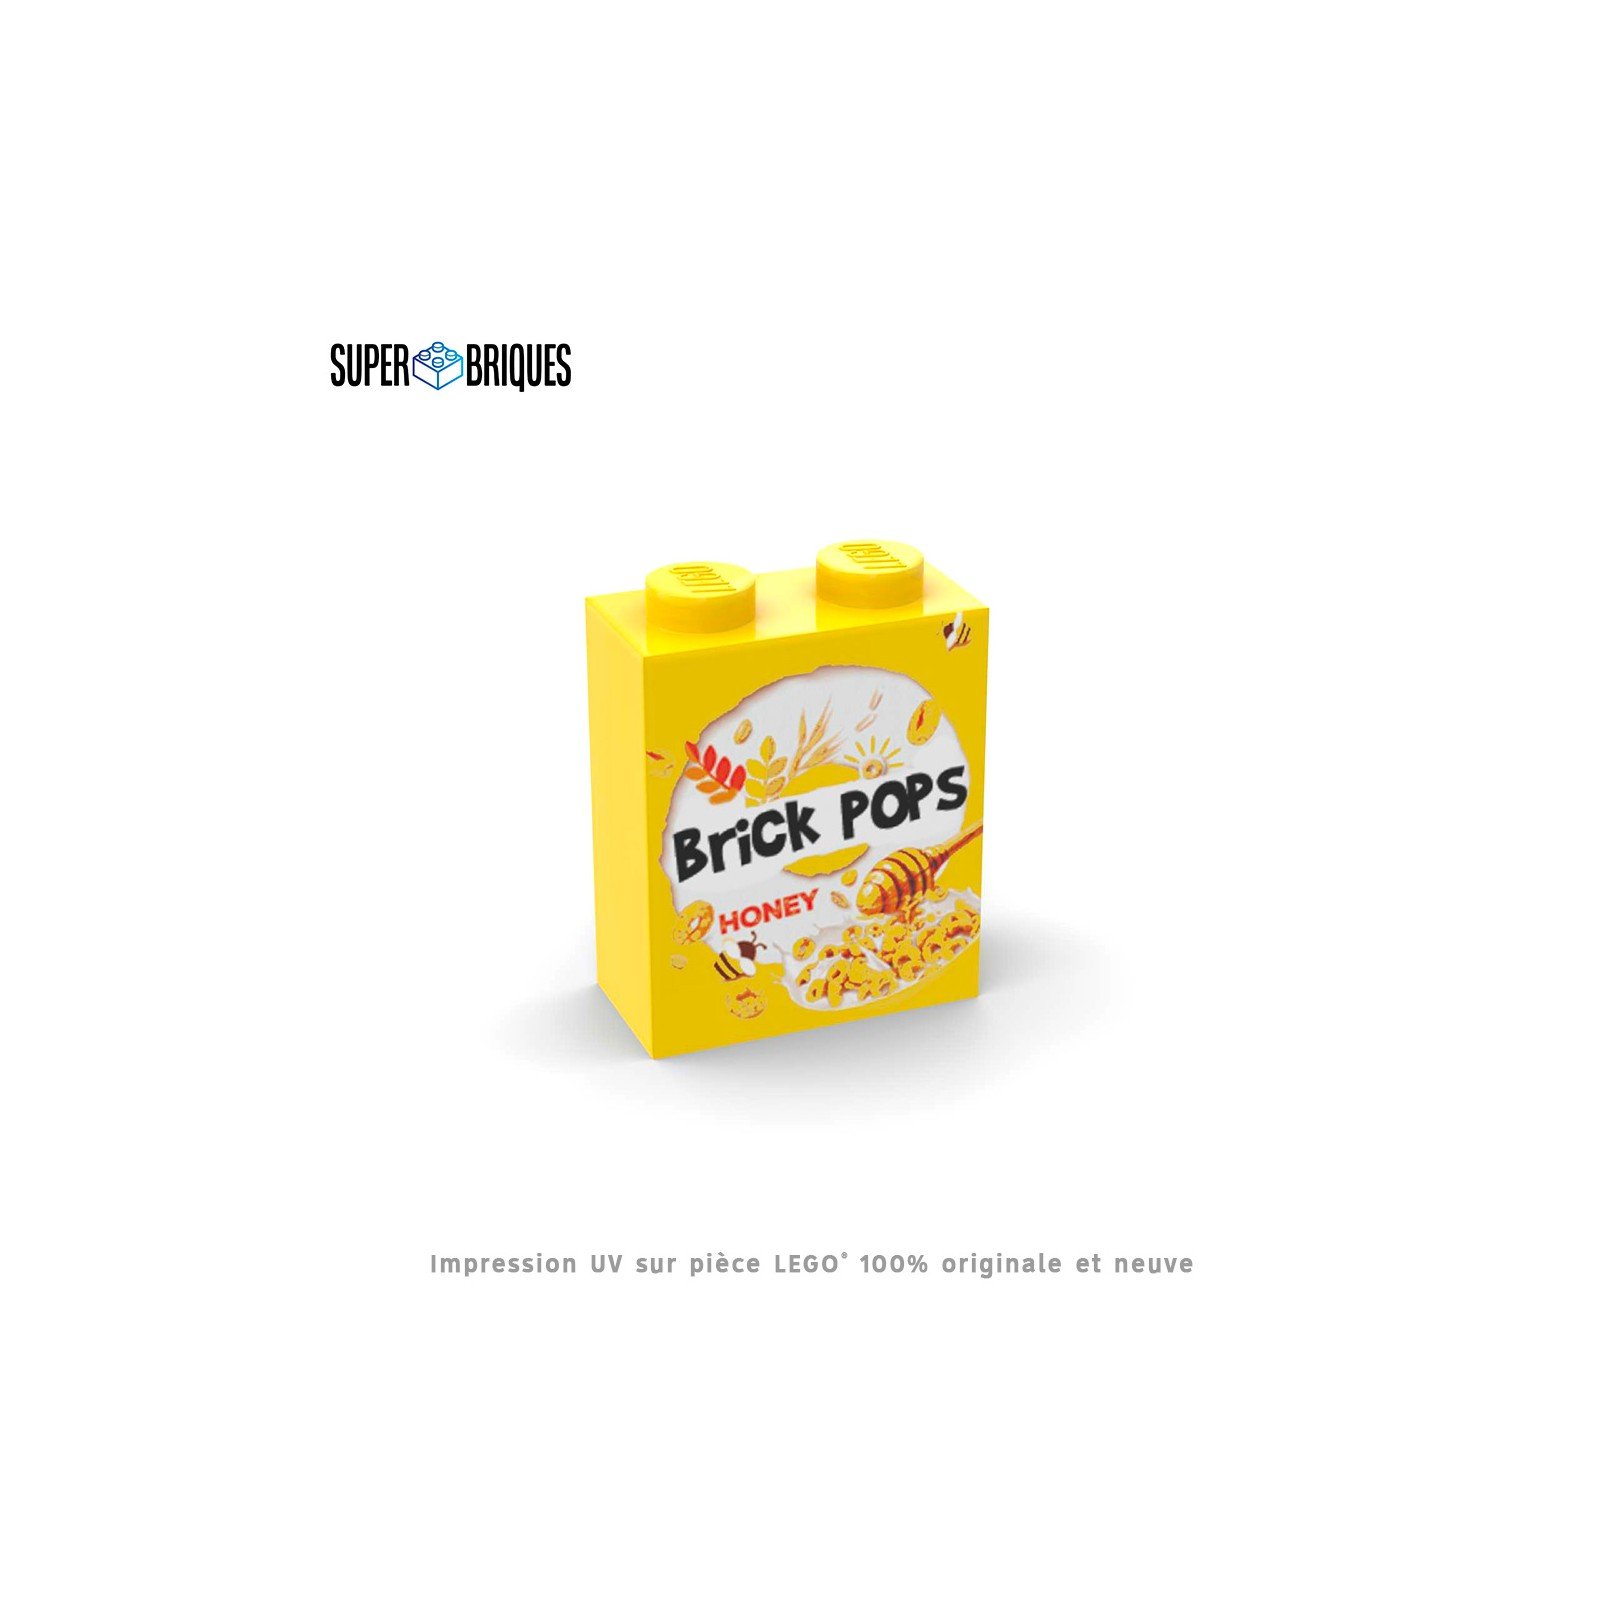 Boîte à céréales - Pops